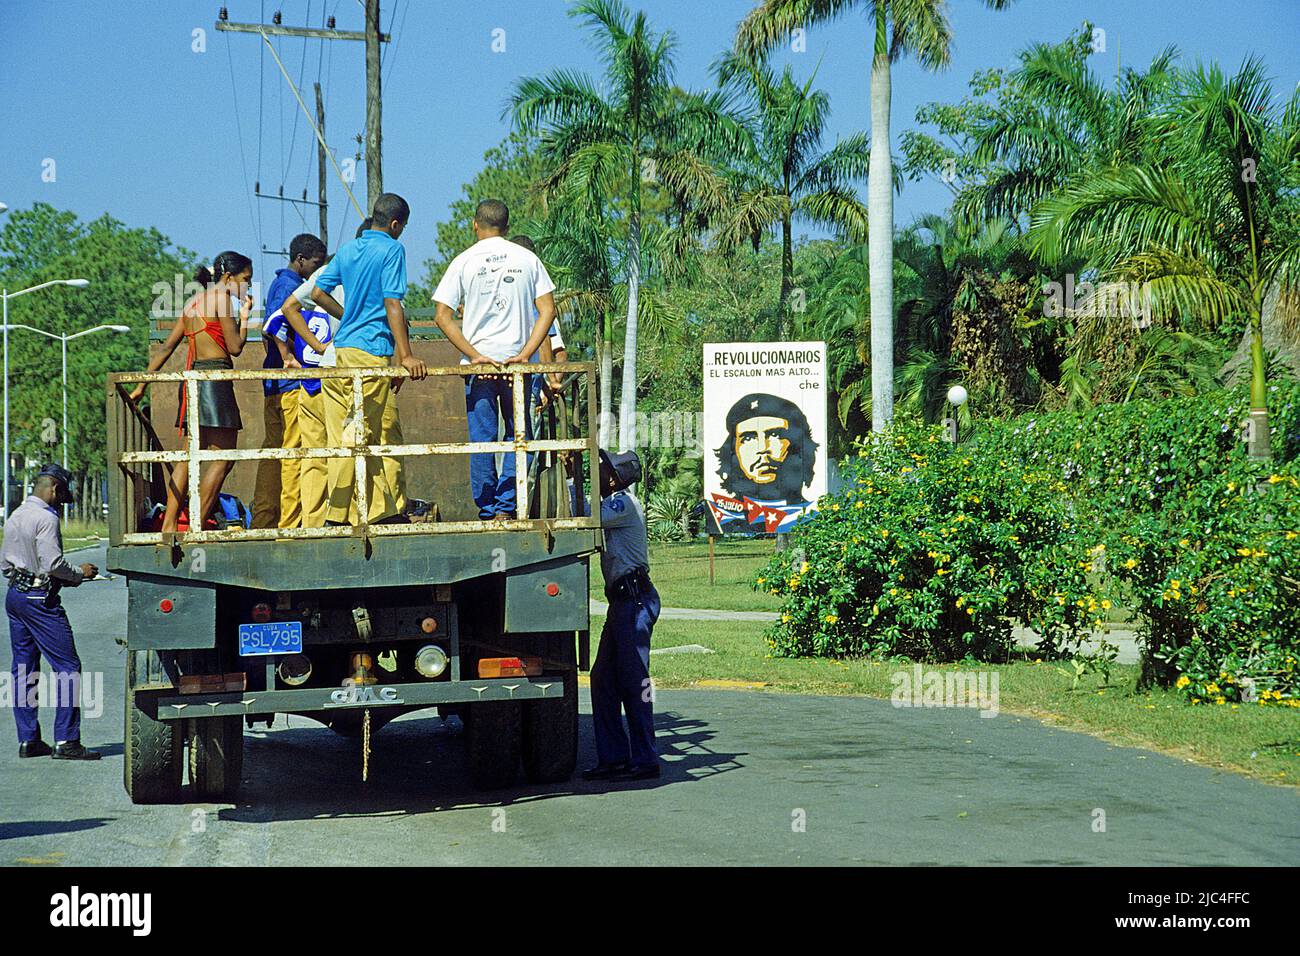 Controllo del traffico, la polizia controlla la gente cubana su un camion, accanto ad un poster di che Guevara, Pinar del Rio, Cuba, Caraibi Foto Stock